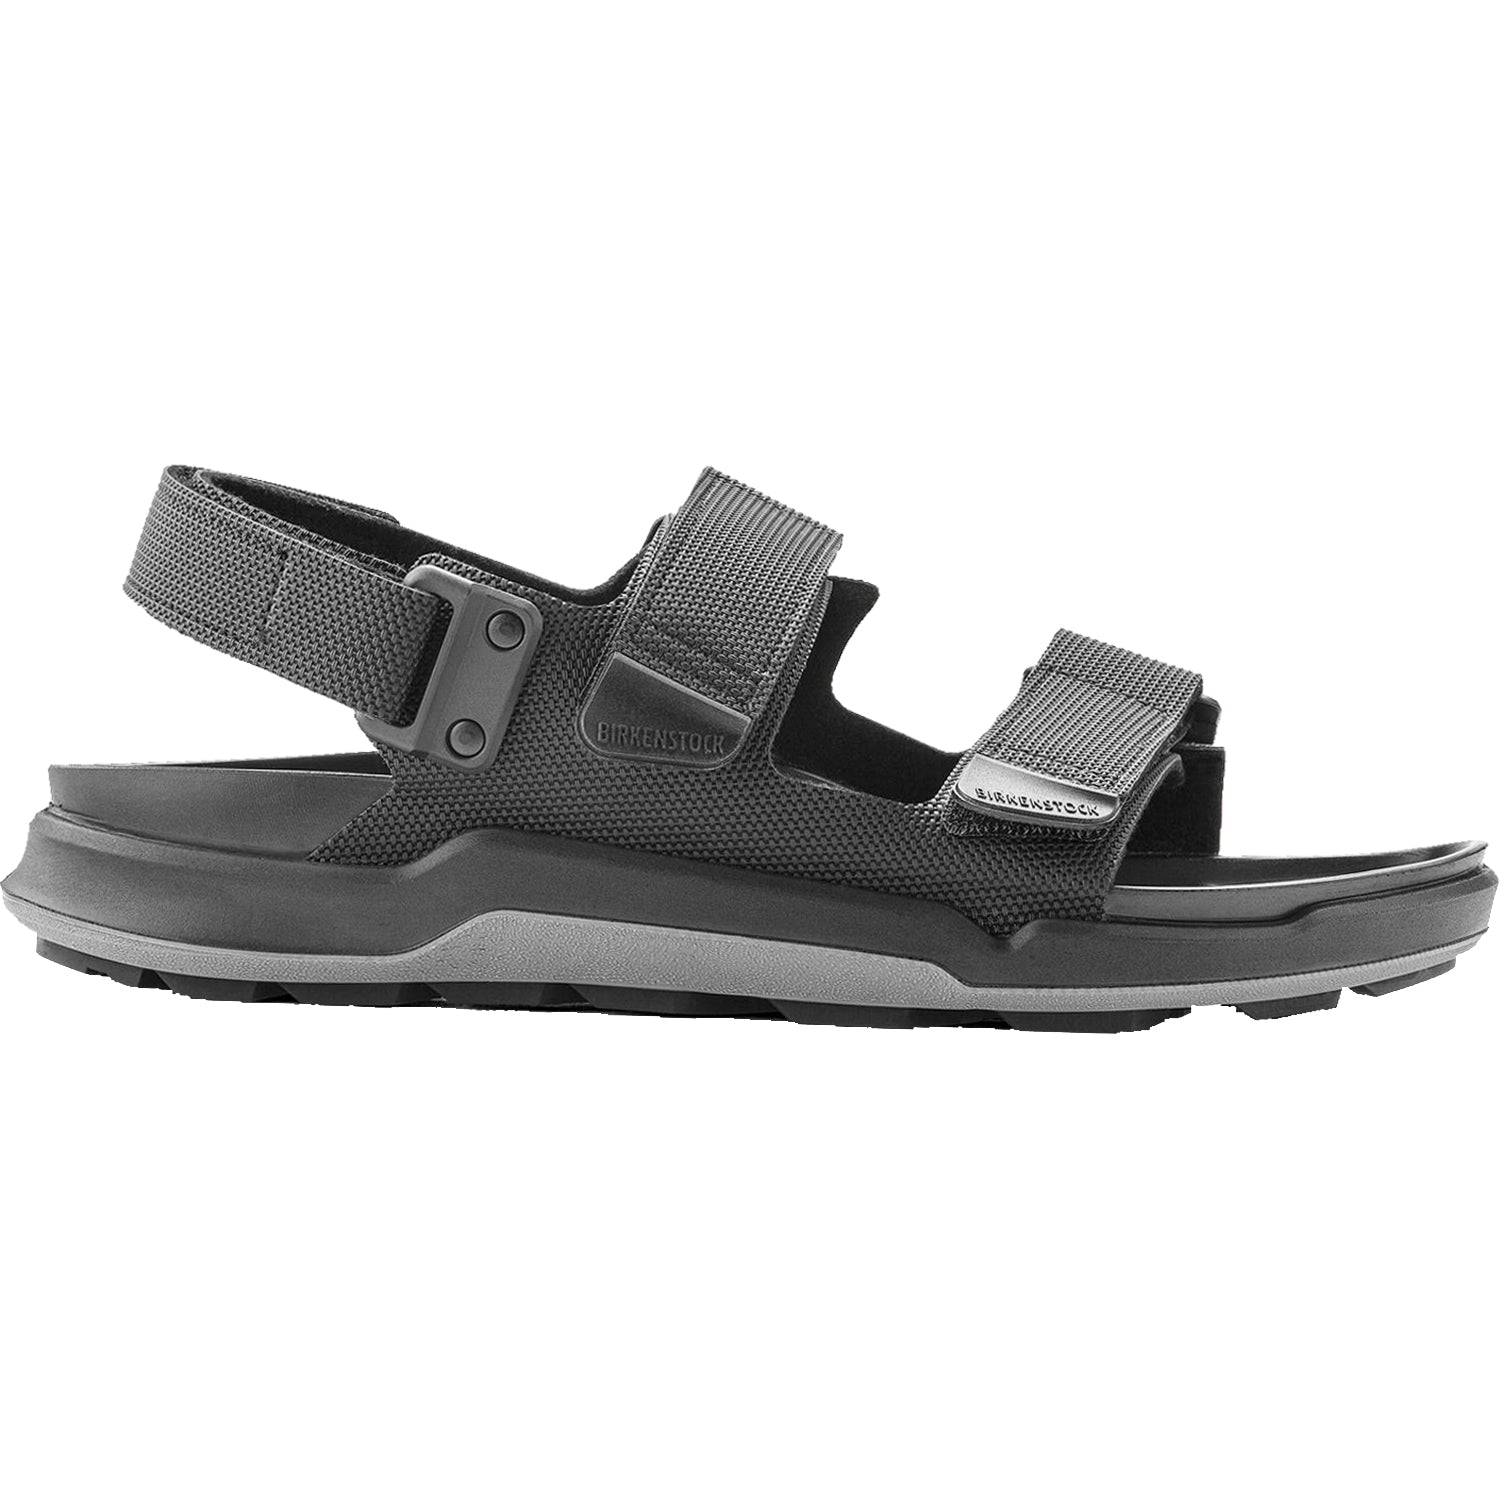 Birkenstock Tatacoa | Men's Outdoor Sandals | Footwear etc.